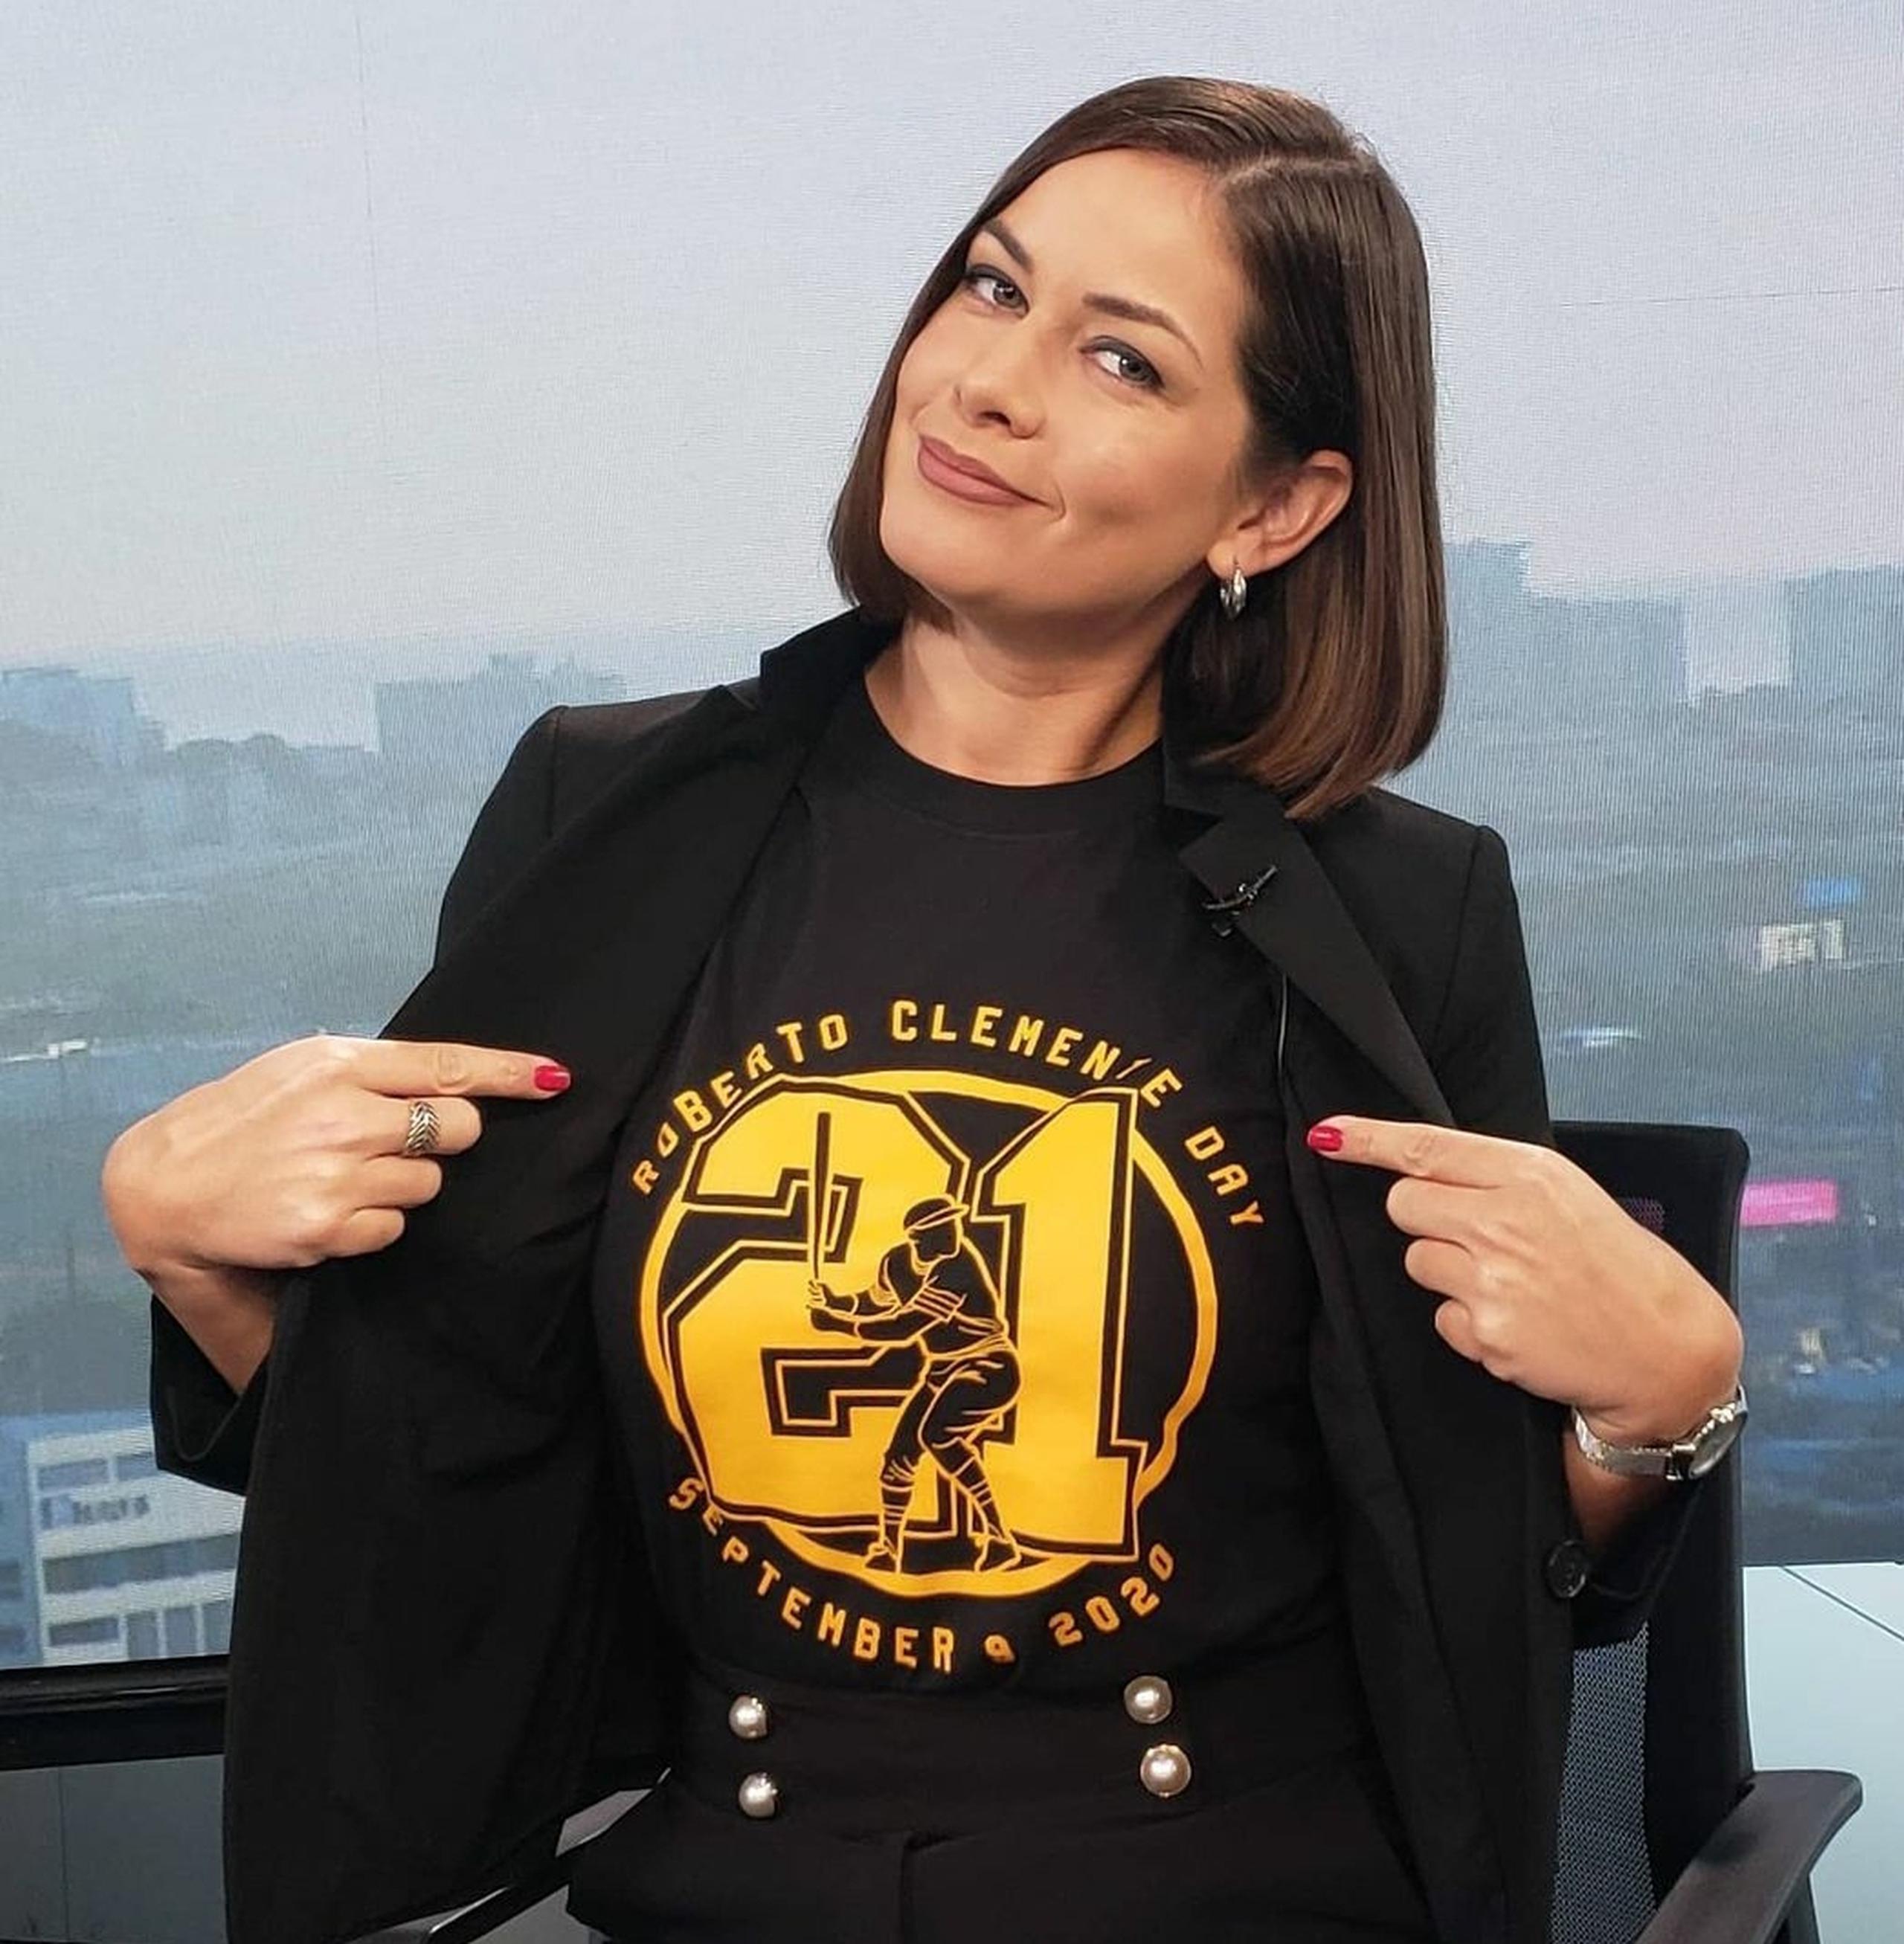 Mónika Candelaria recientemente rindió homenaje a Roberto Clemente usando una camisa con su número en el Día de Roberto Clemente.